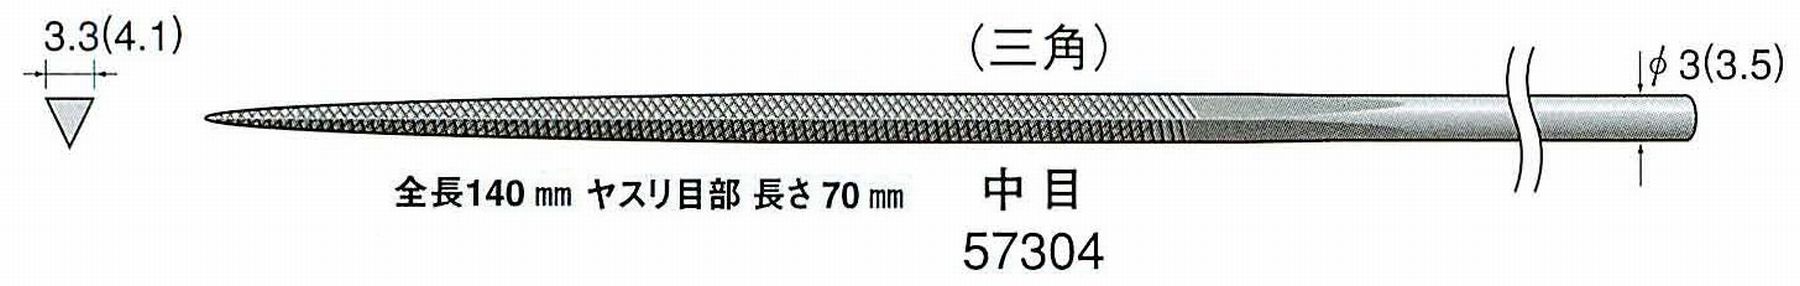 ナカニシ/NAKANISHI 精密仕上げヤスリ 三角 中目 軸径(シャンク)φ3.0mm(3.5) 57304